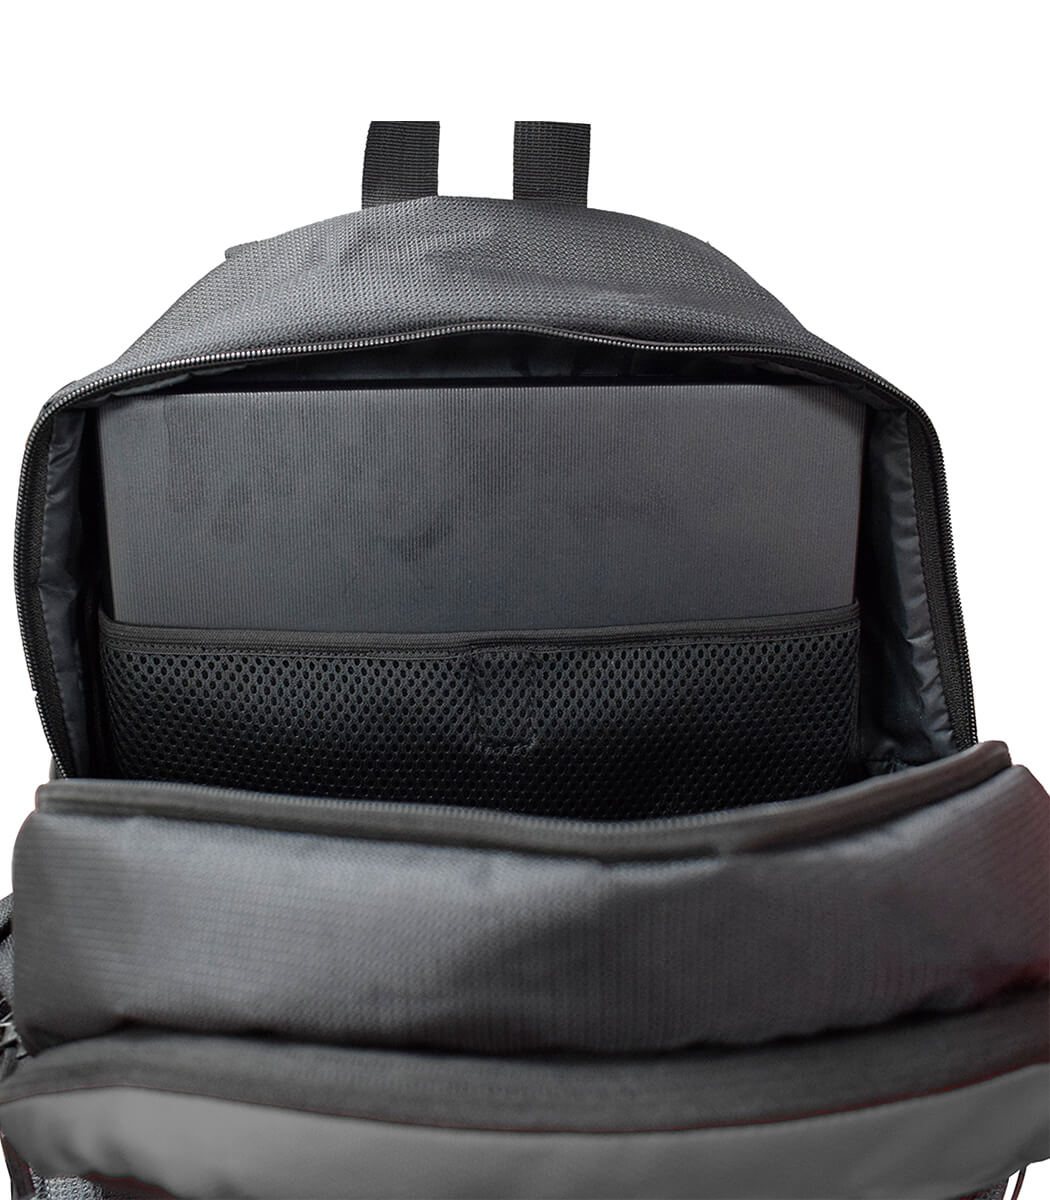 LBP40 – Laptop Backpack